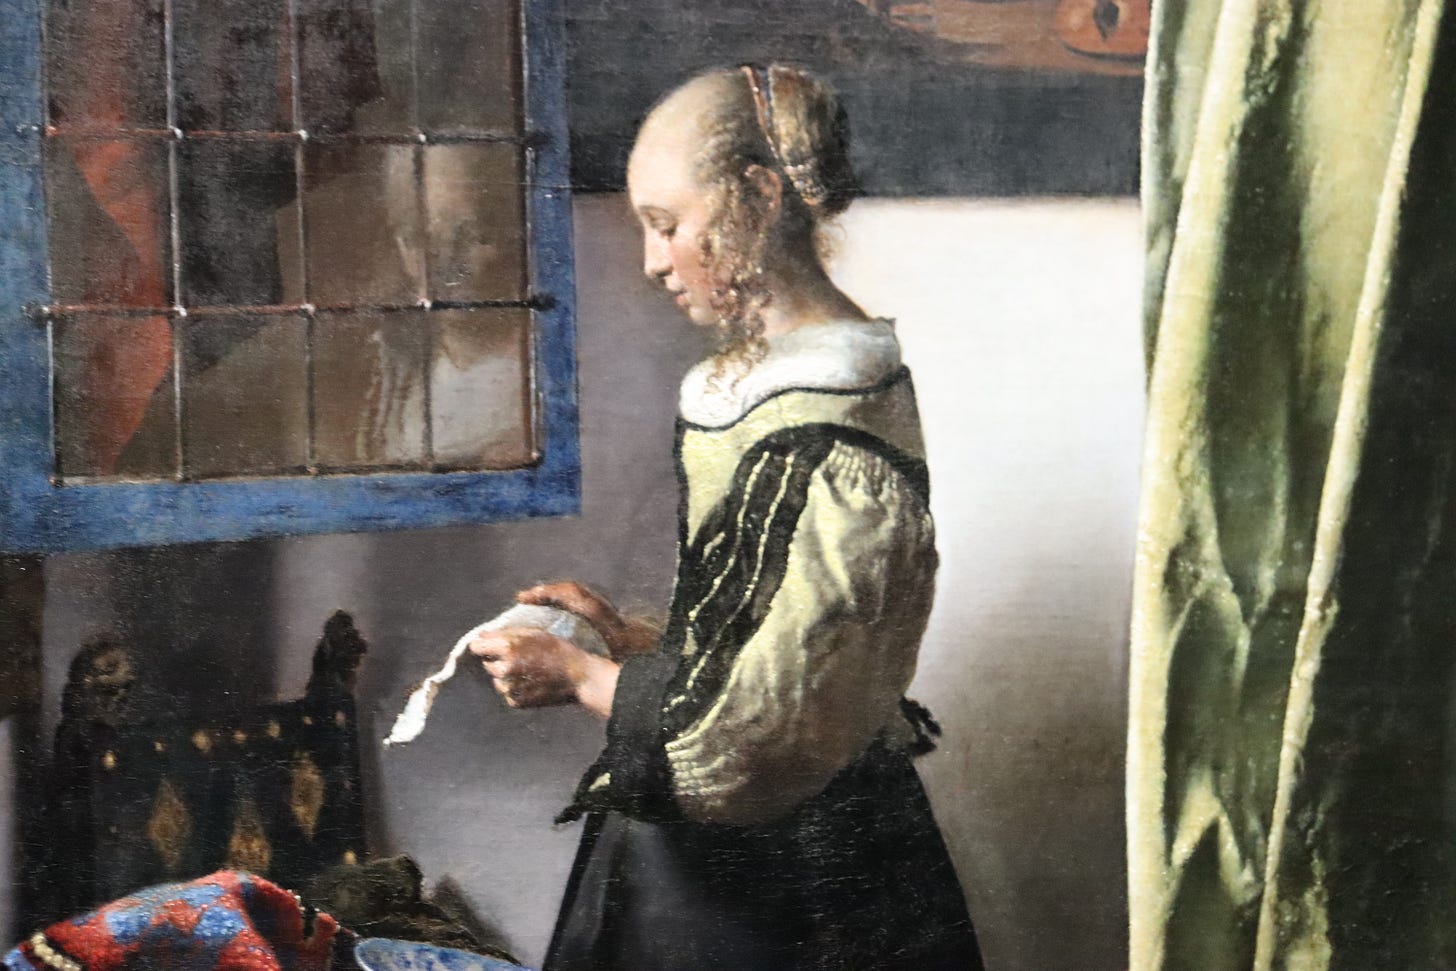 Vermeer's Girl Reading a Letter from the Rijksmuseum Vermeer exhibit